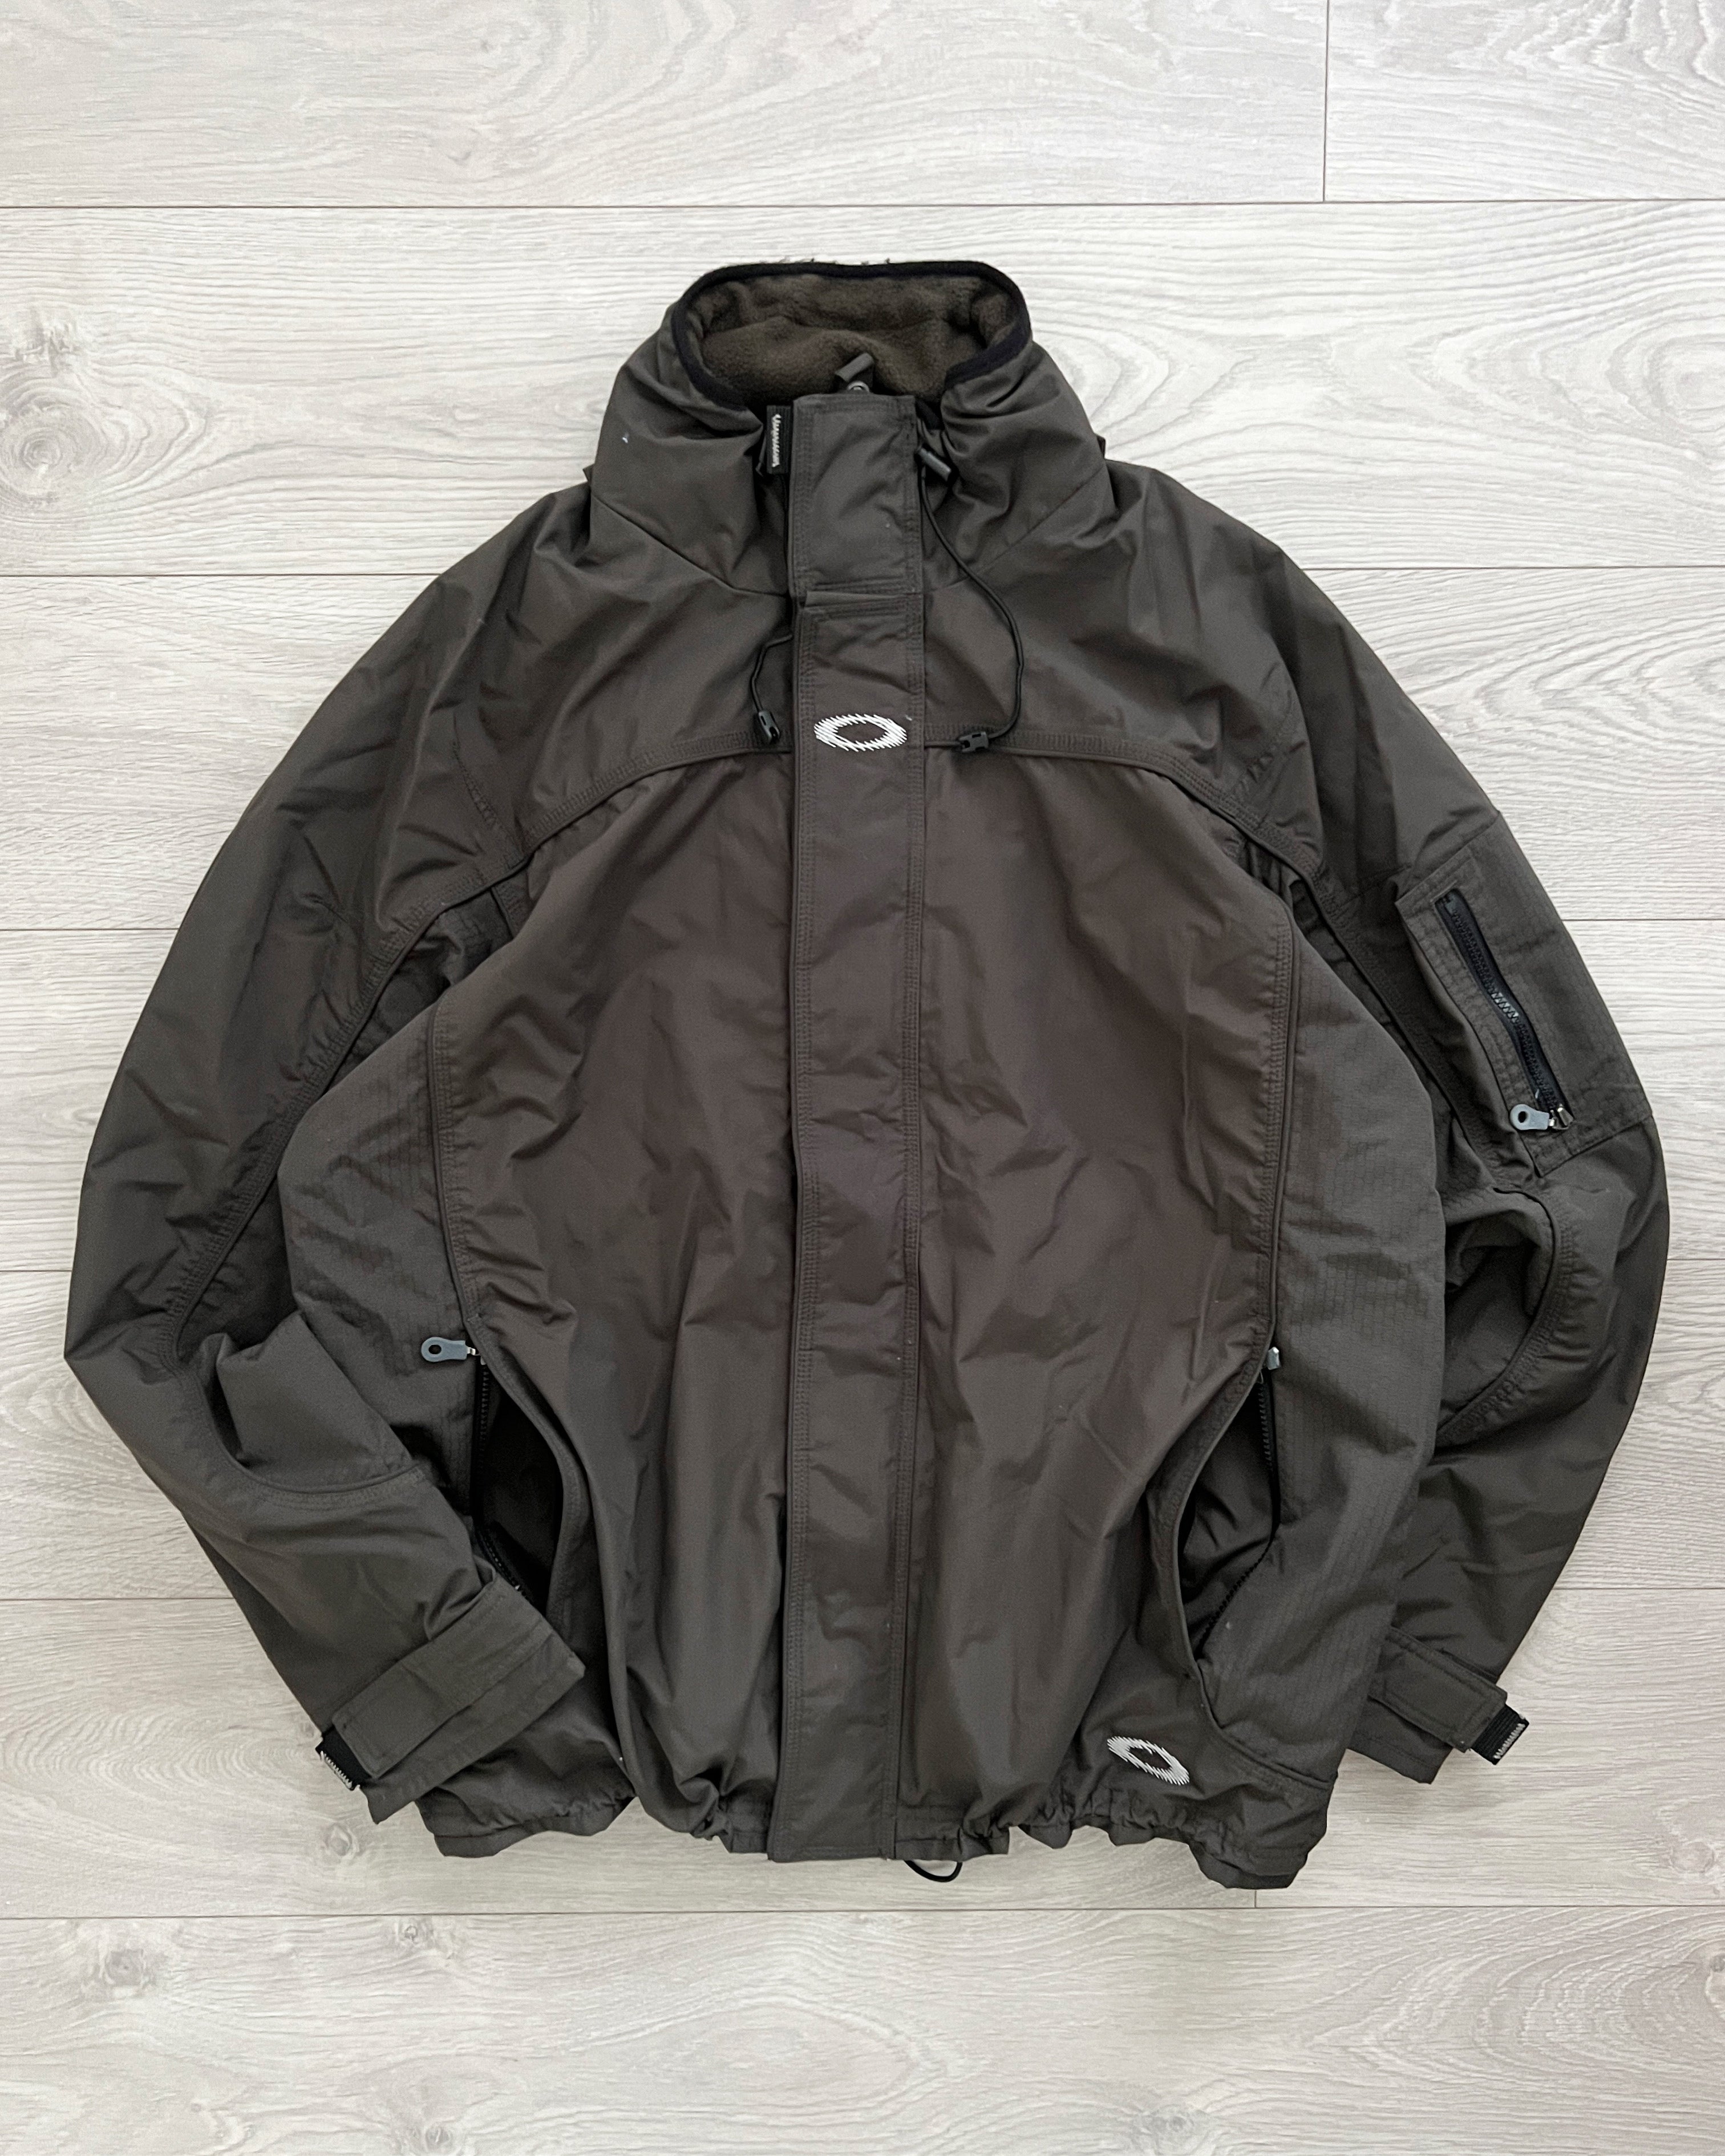 〇〇円で購入したいです90s 00s oakley nylon jacket vintage 